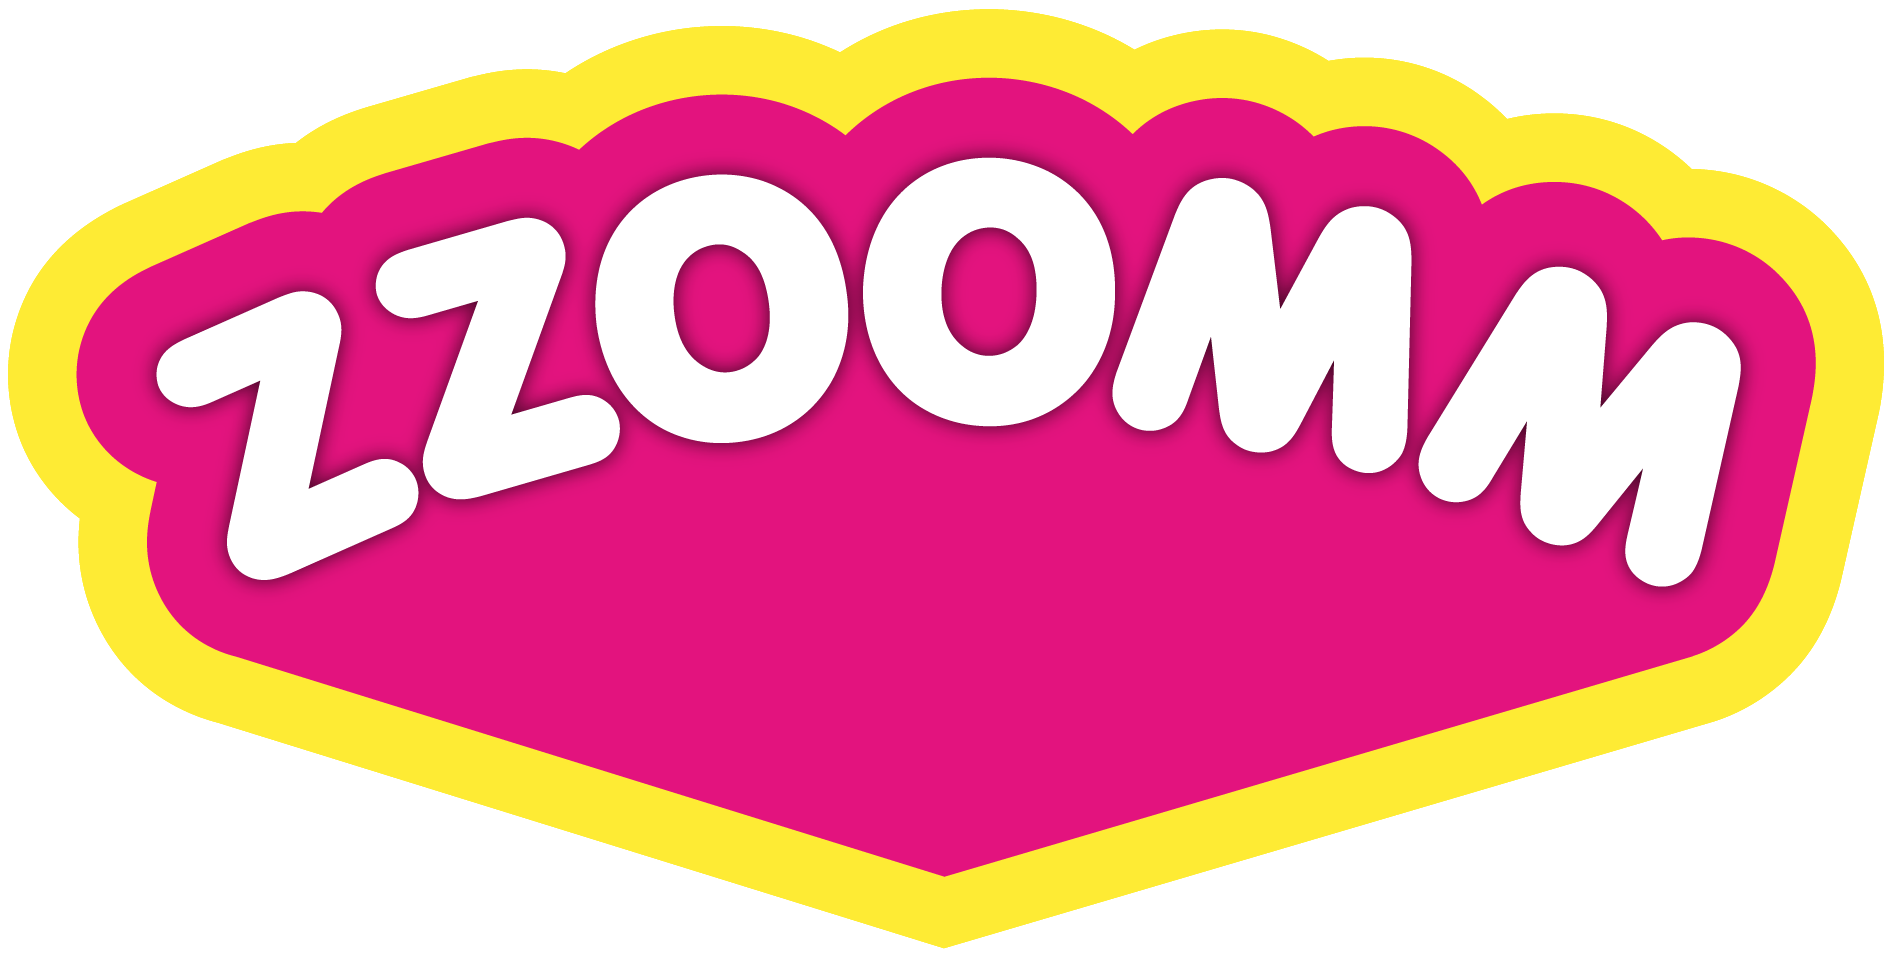 Zzoomm